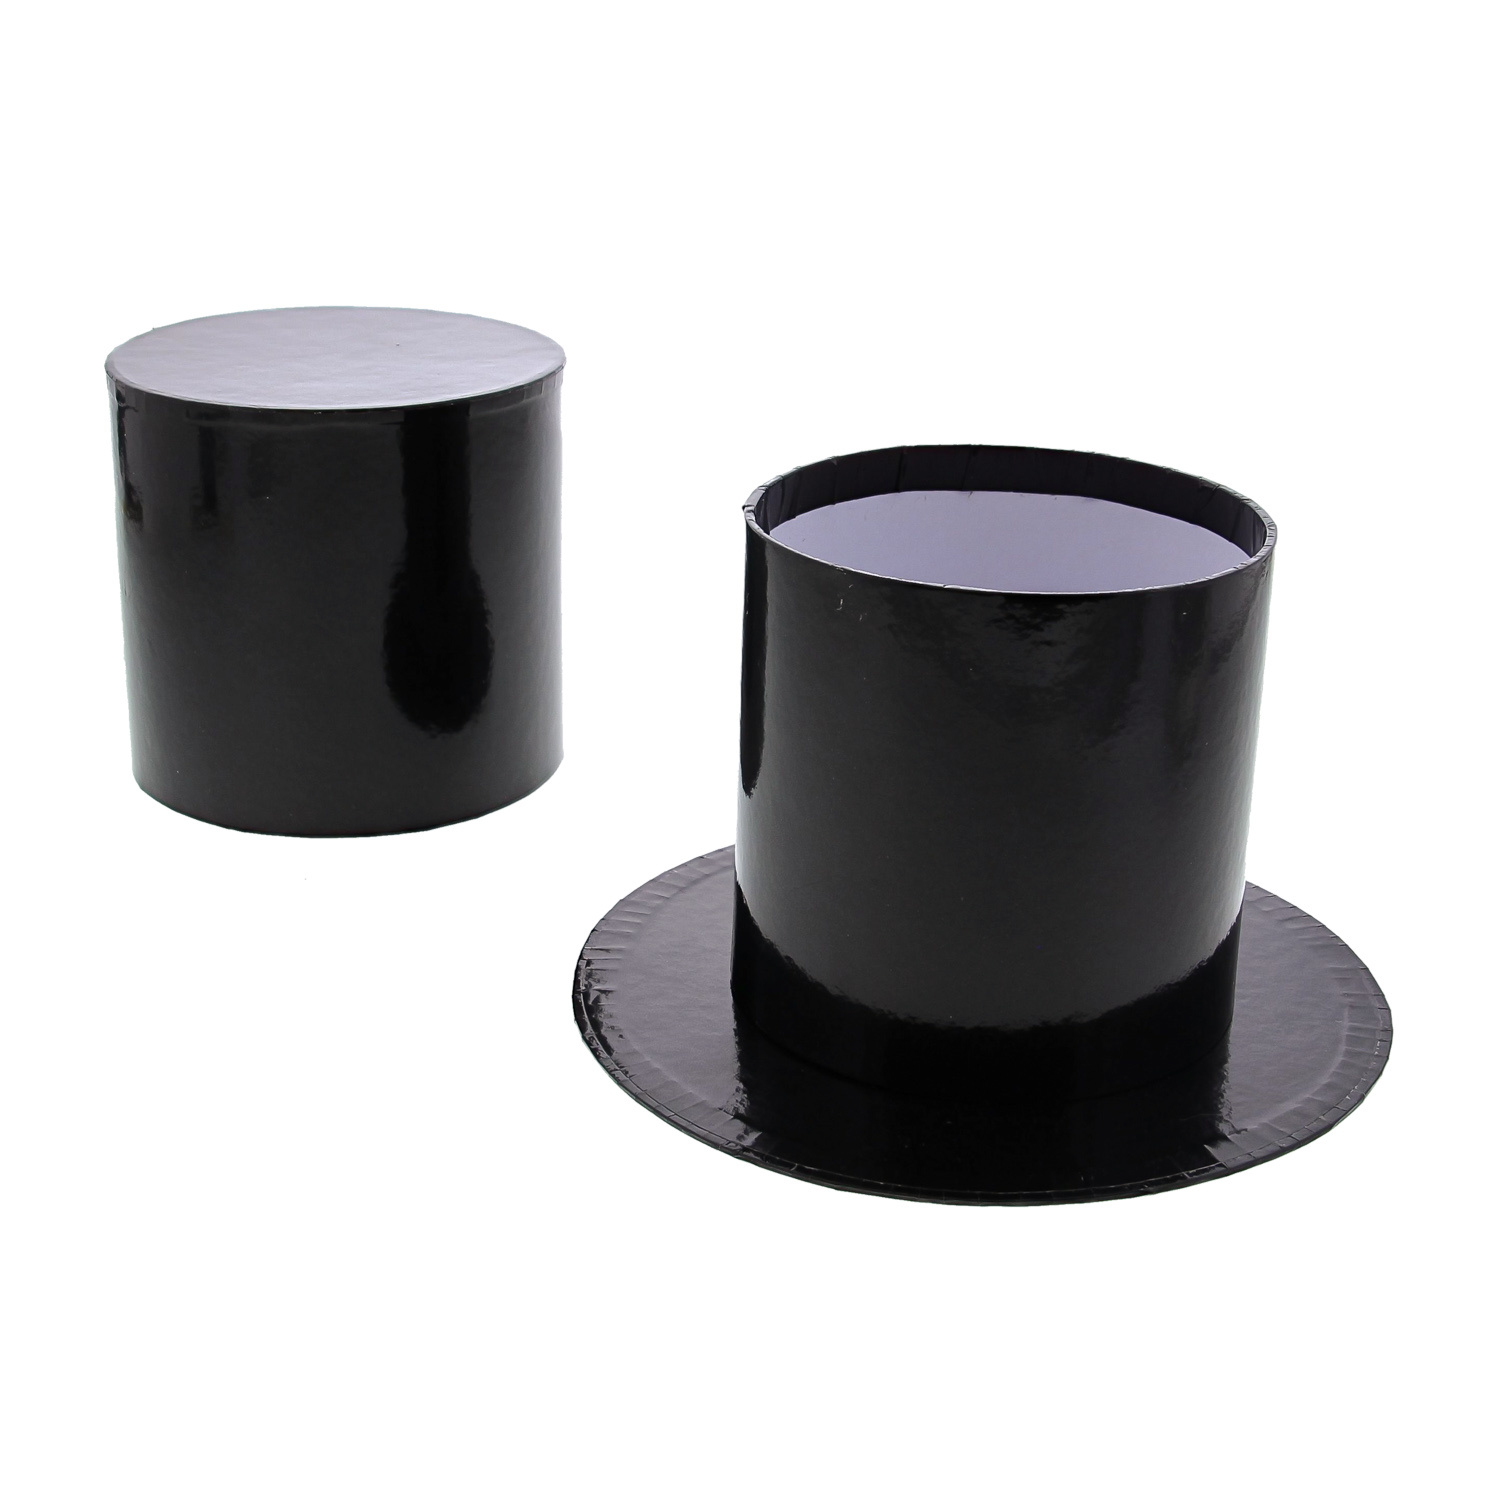 Pipe hat box medium - 160*160*97mm - 6 pieces